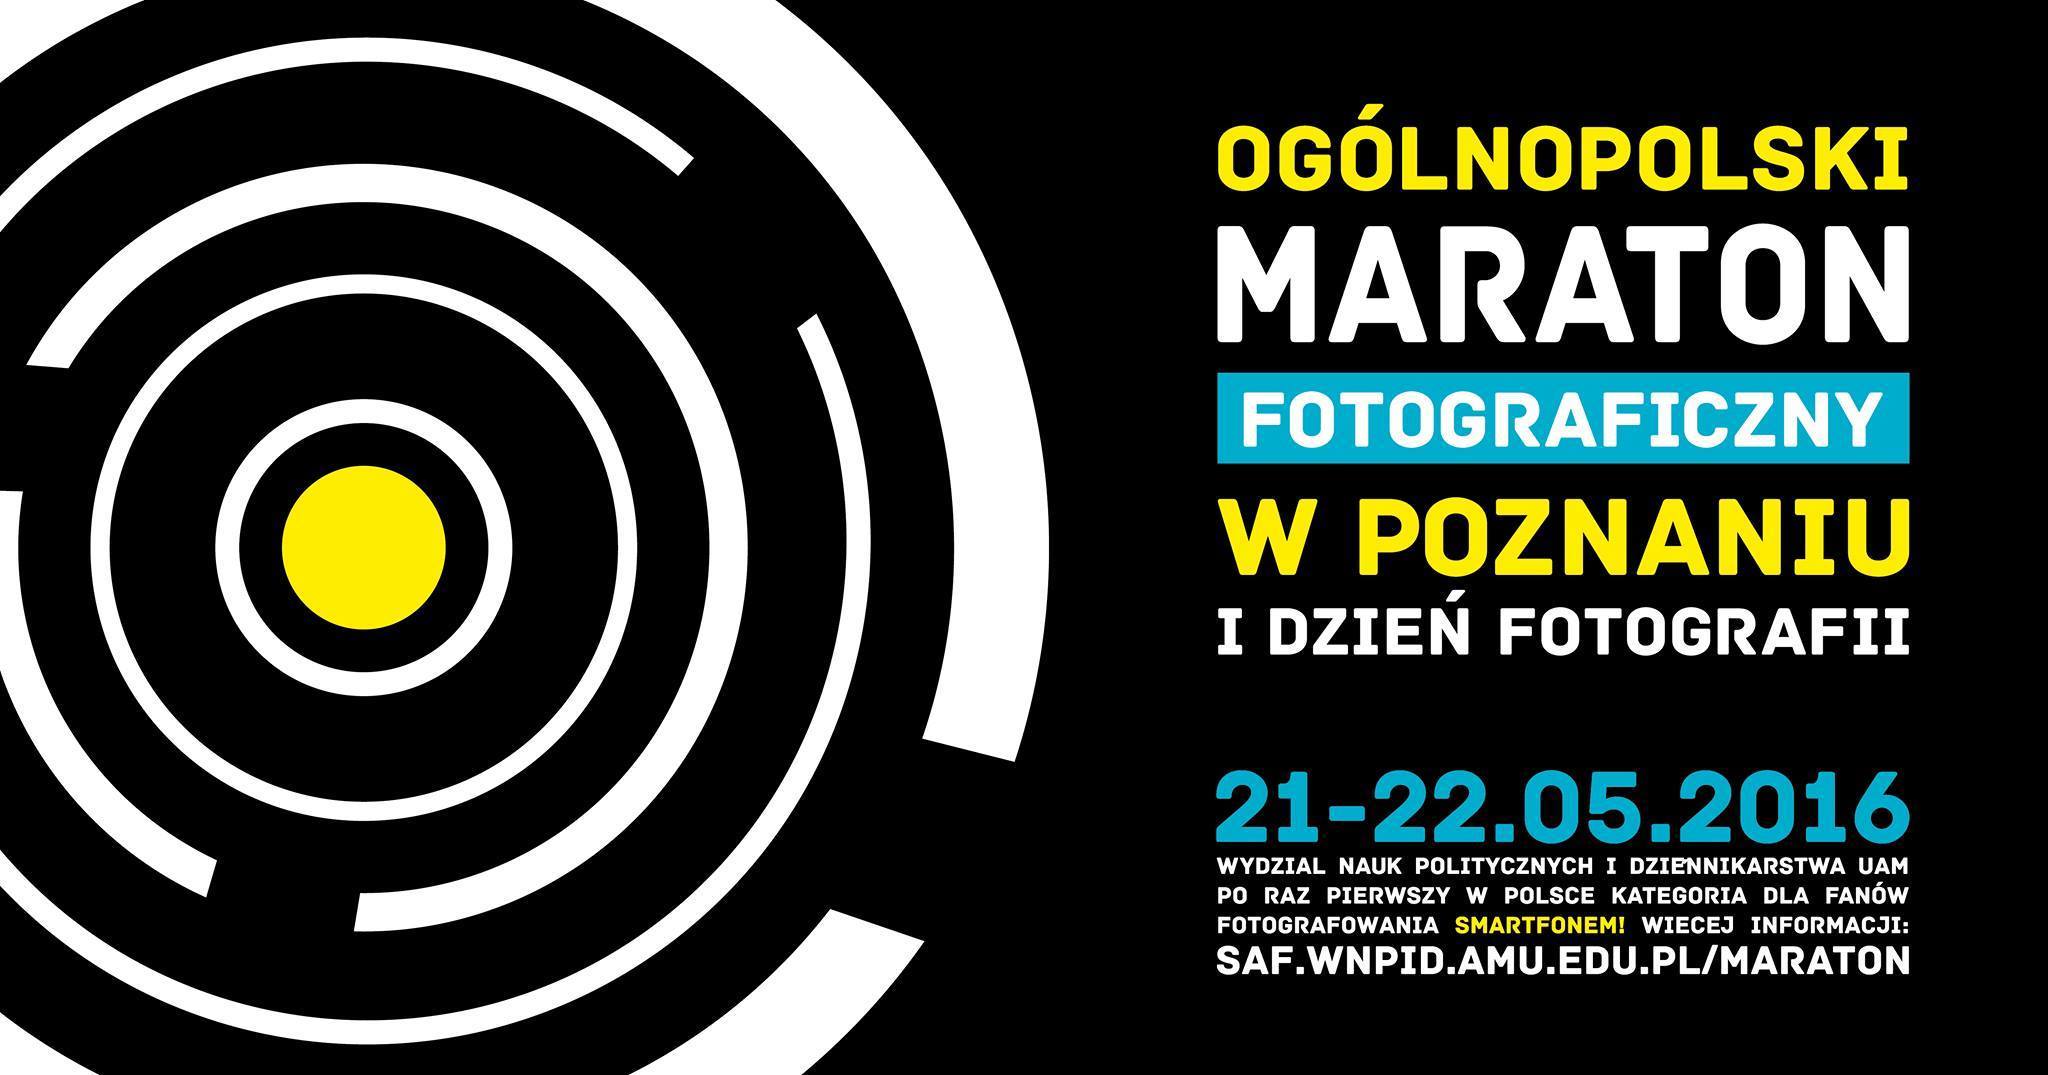 Ogólnopolski Maraton Fotograficzny już za tydzień